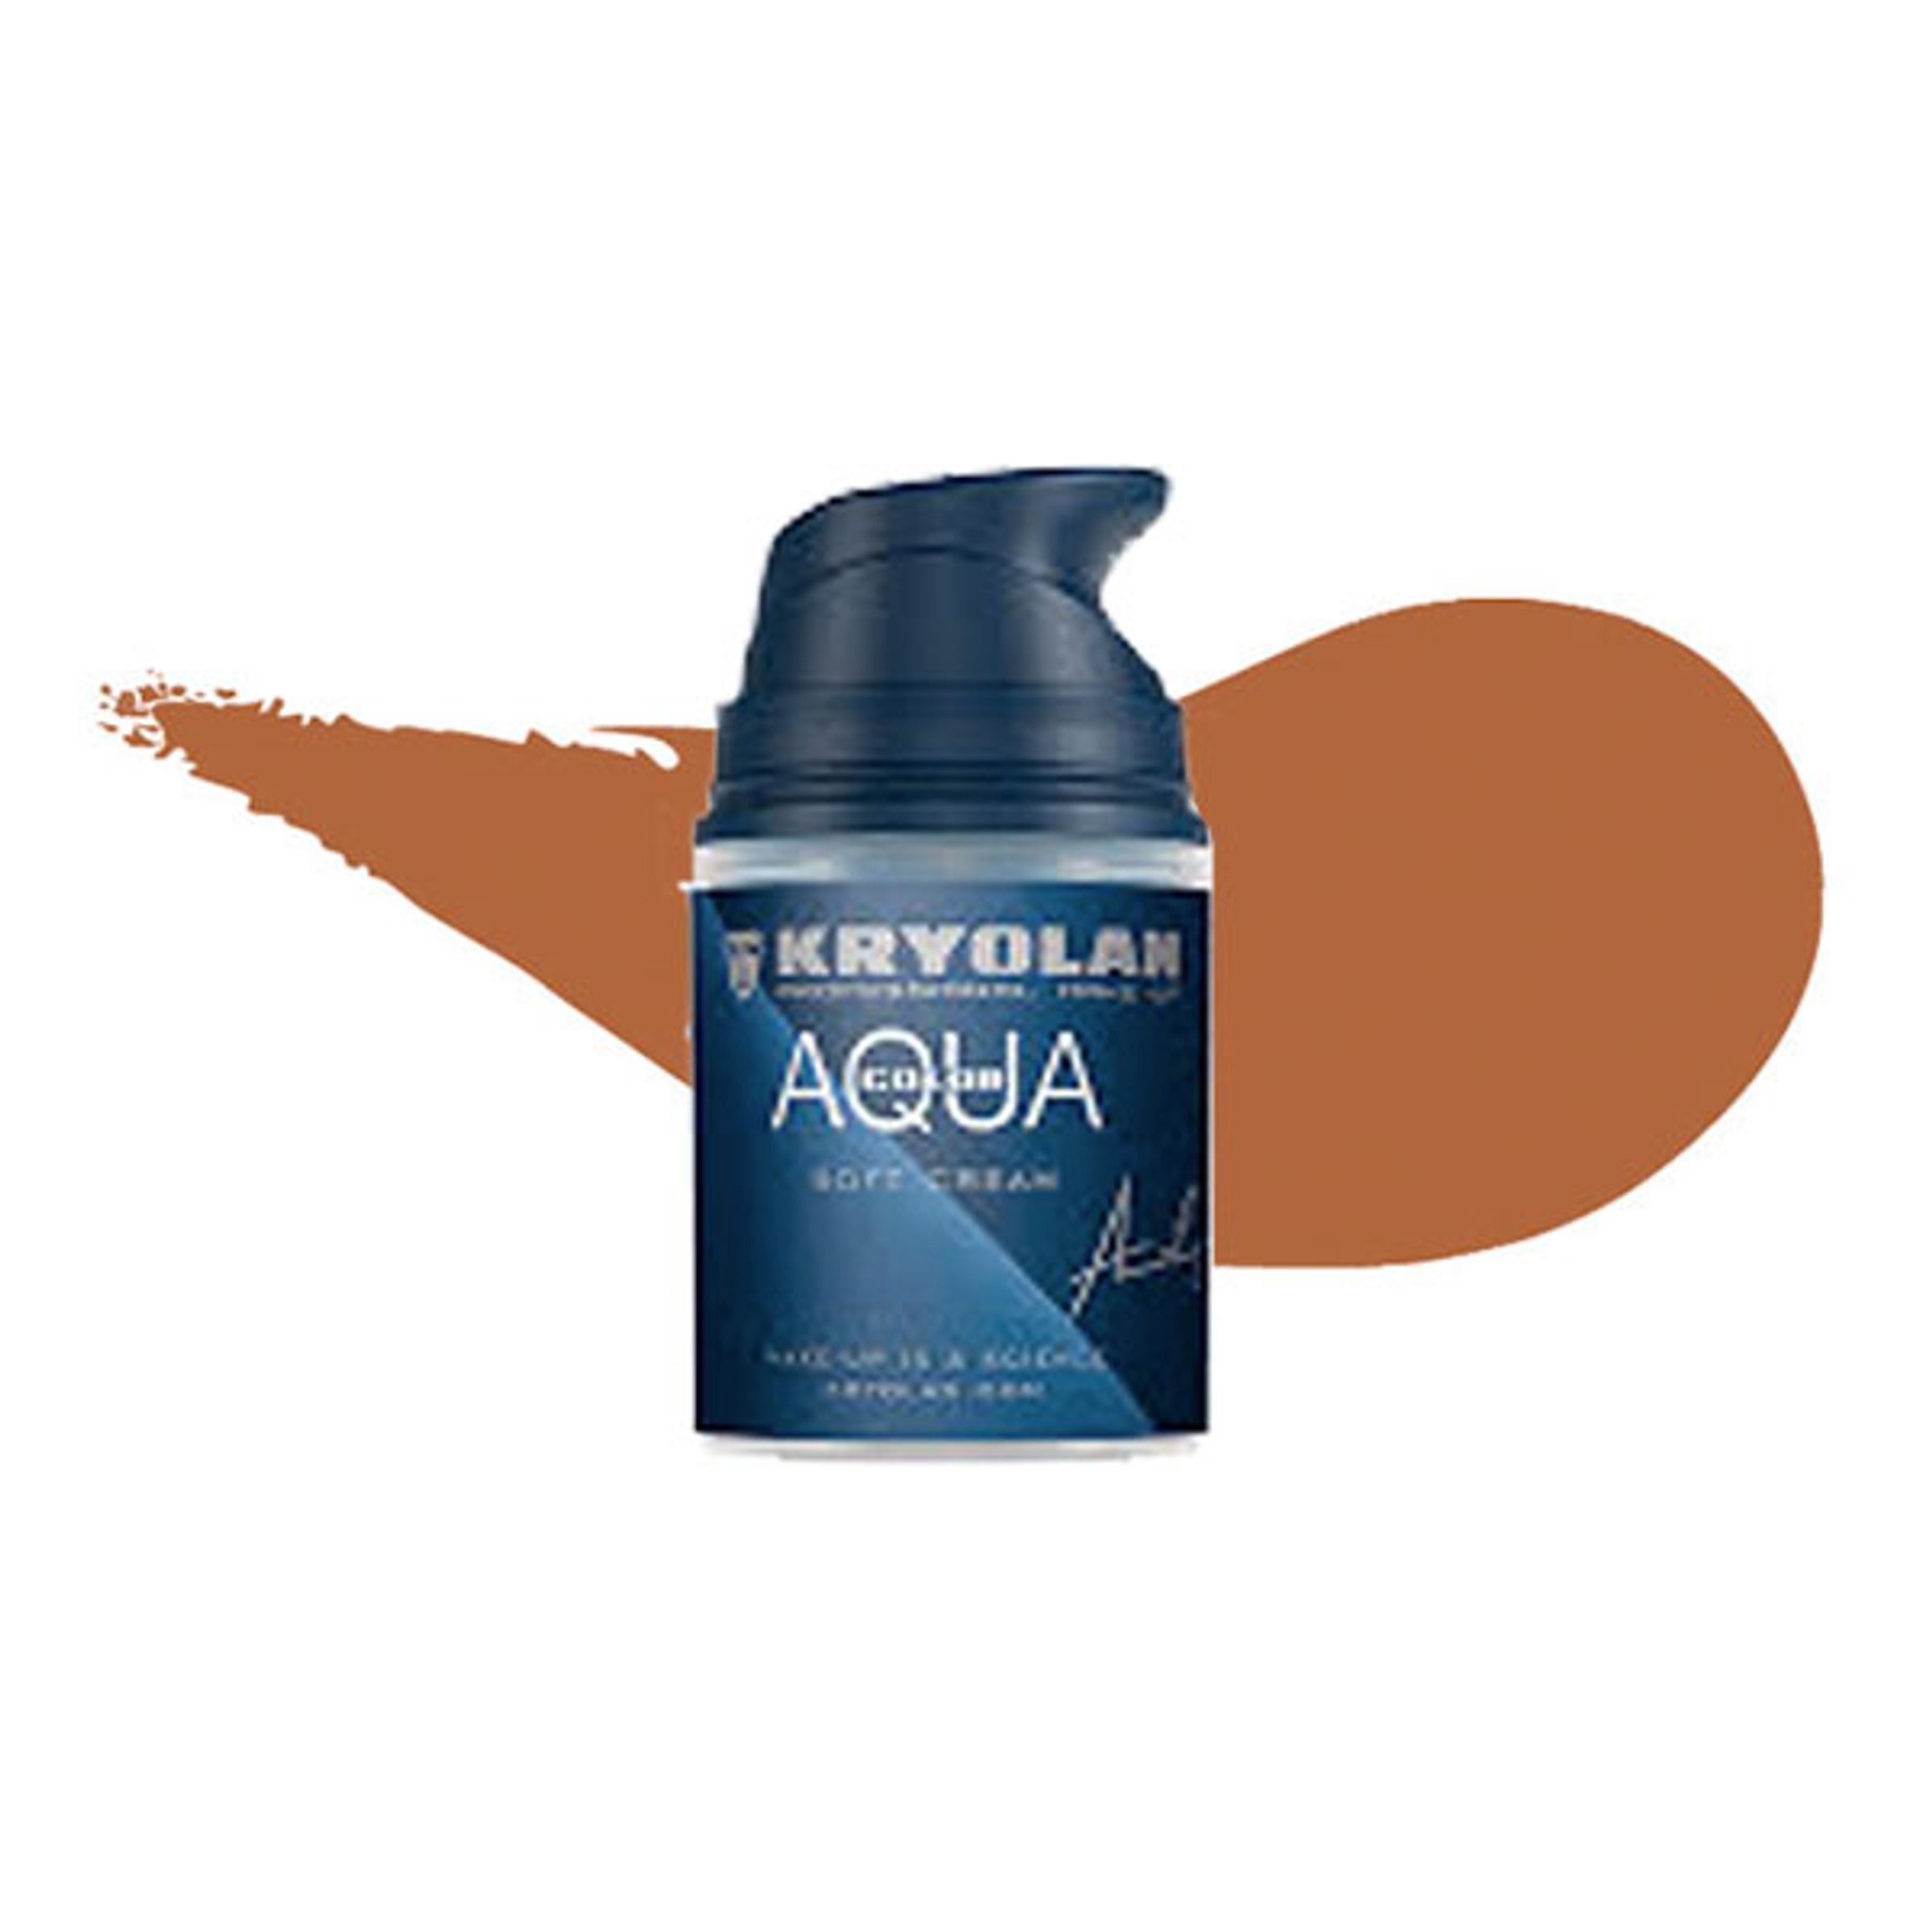 Kryolan Aquacolor Soft Cream - 10W